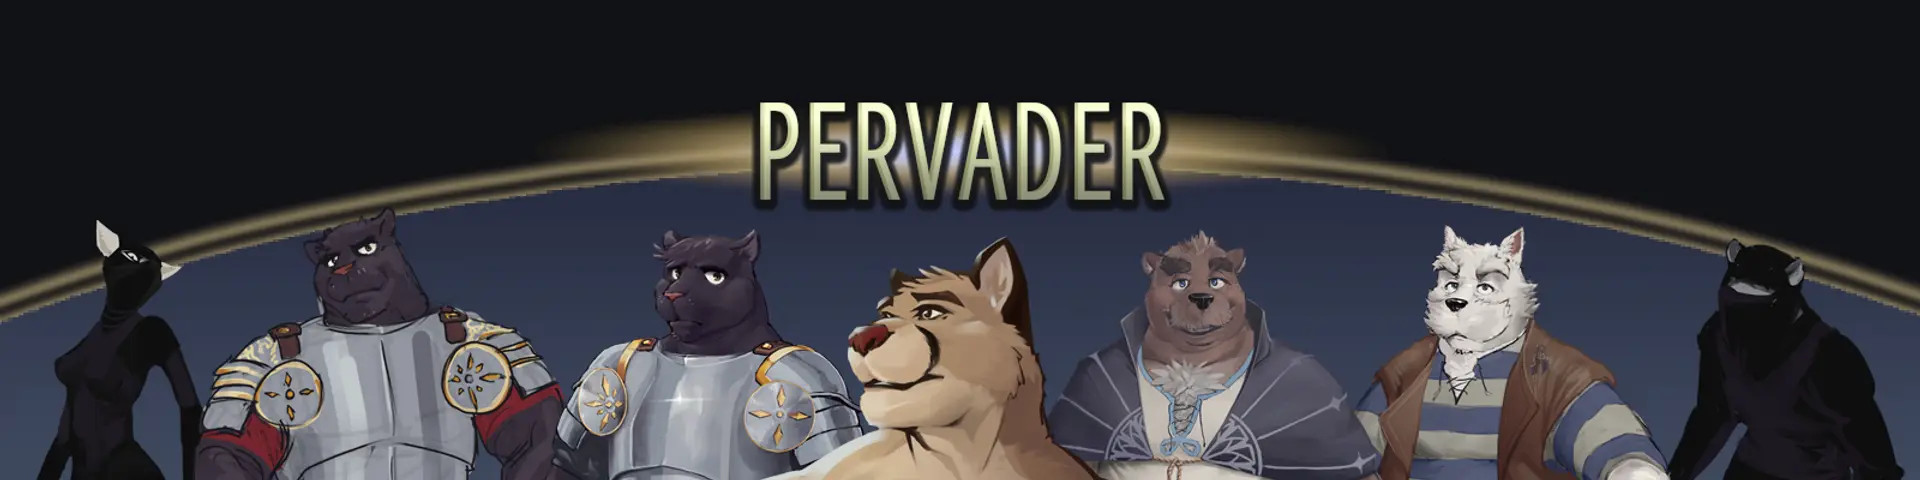 Pervader [v0.3.0] main image